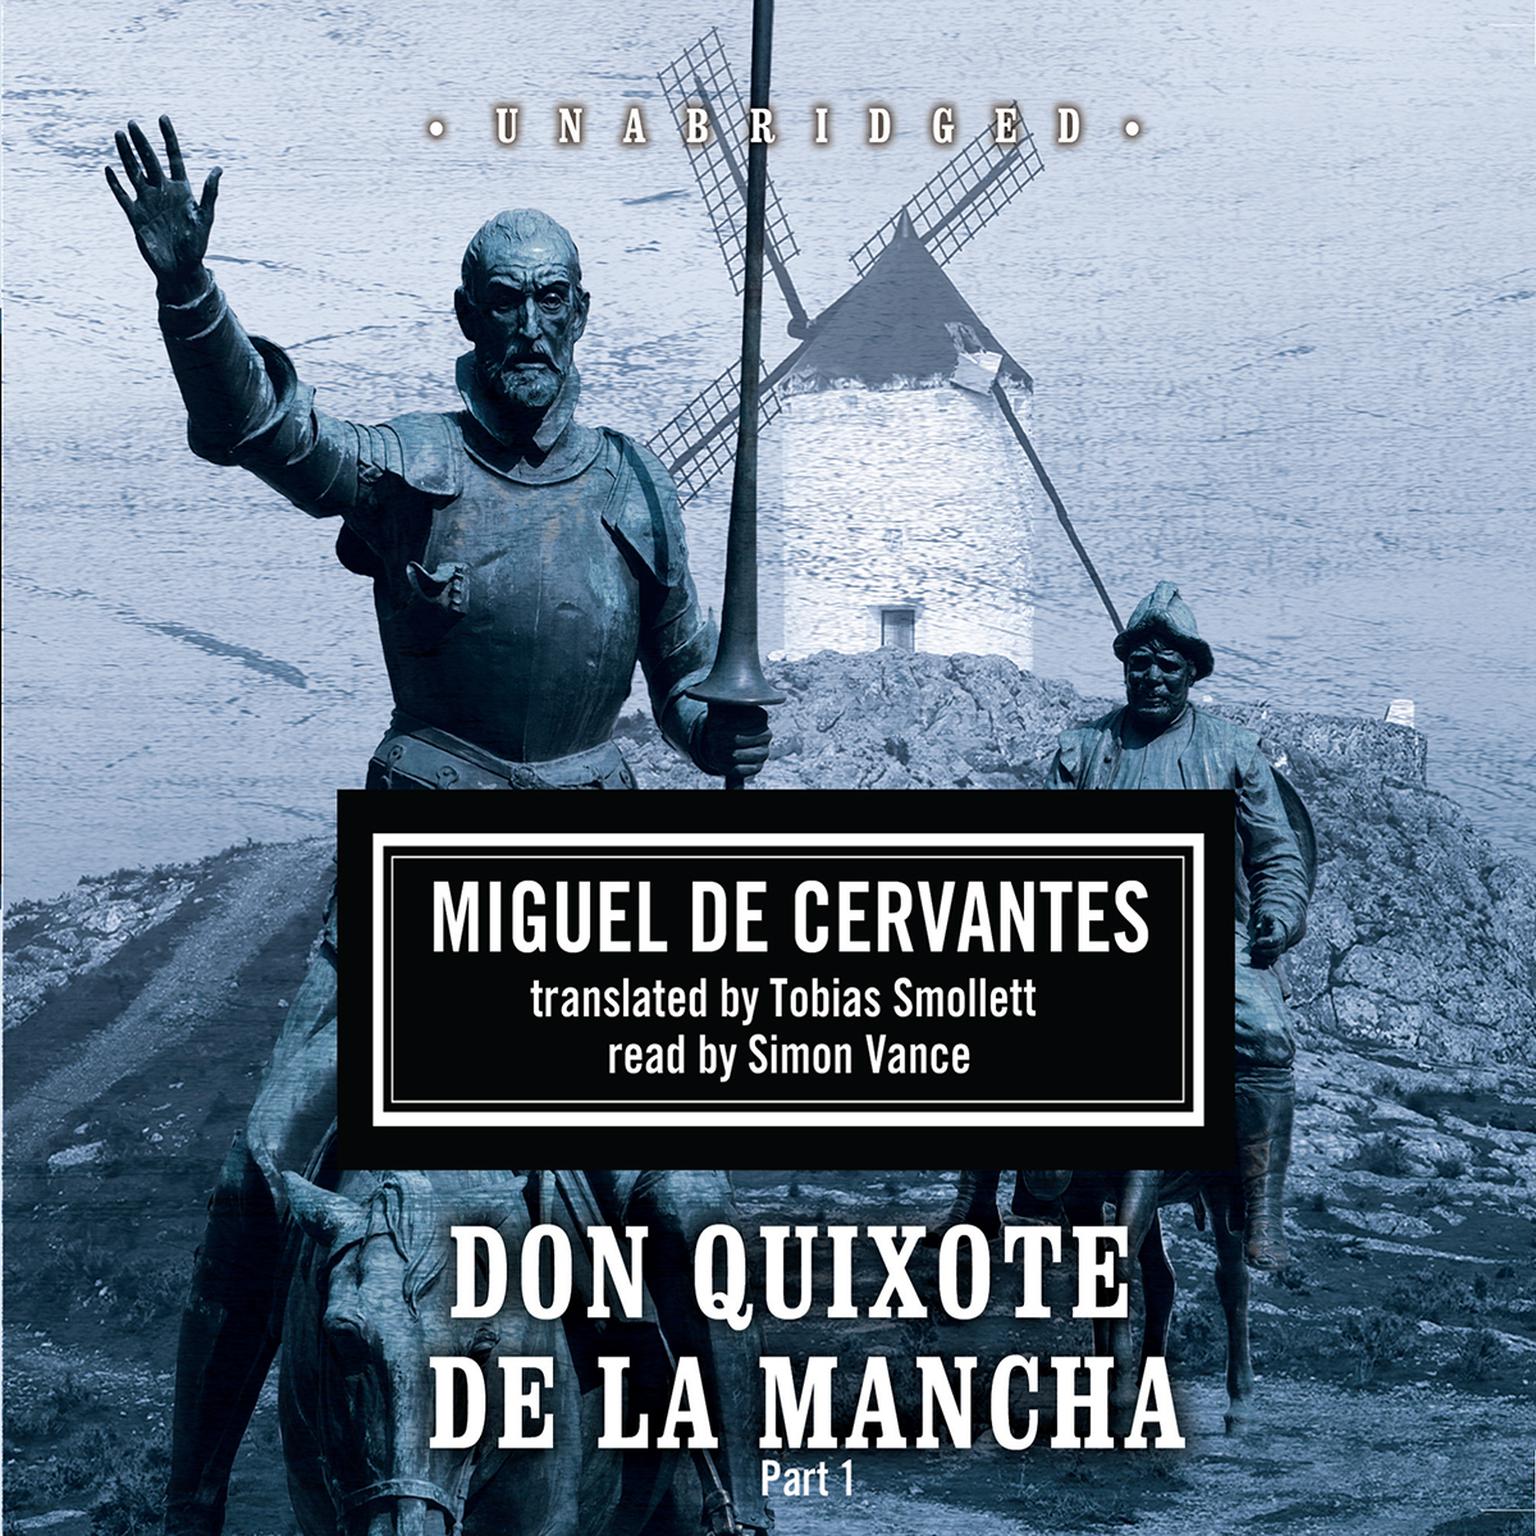 Don Quixote de la Mancha Audiobook, by Miguel de Cervantes